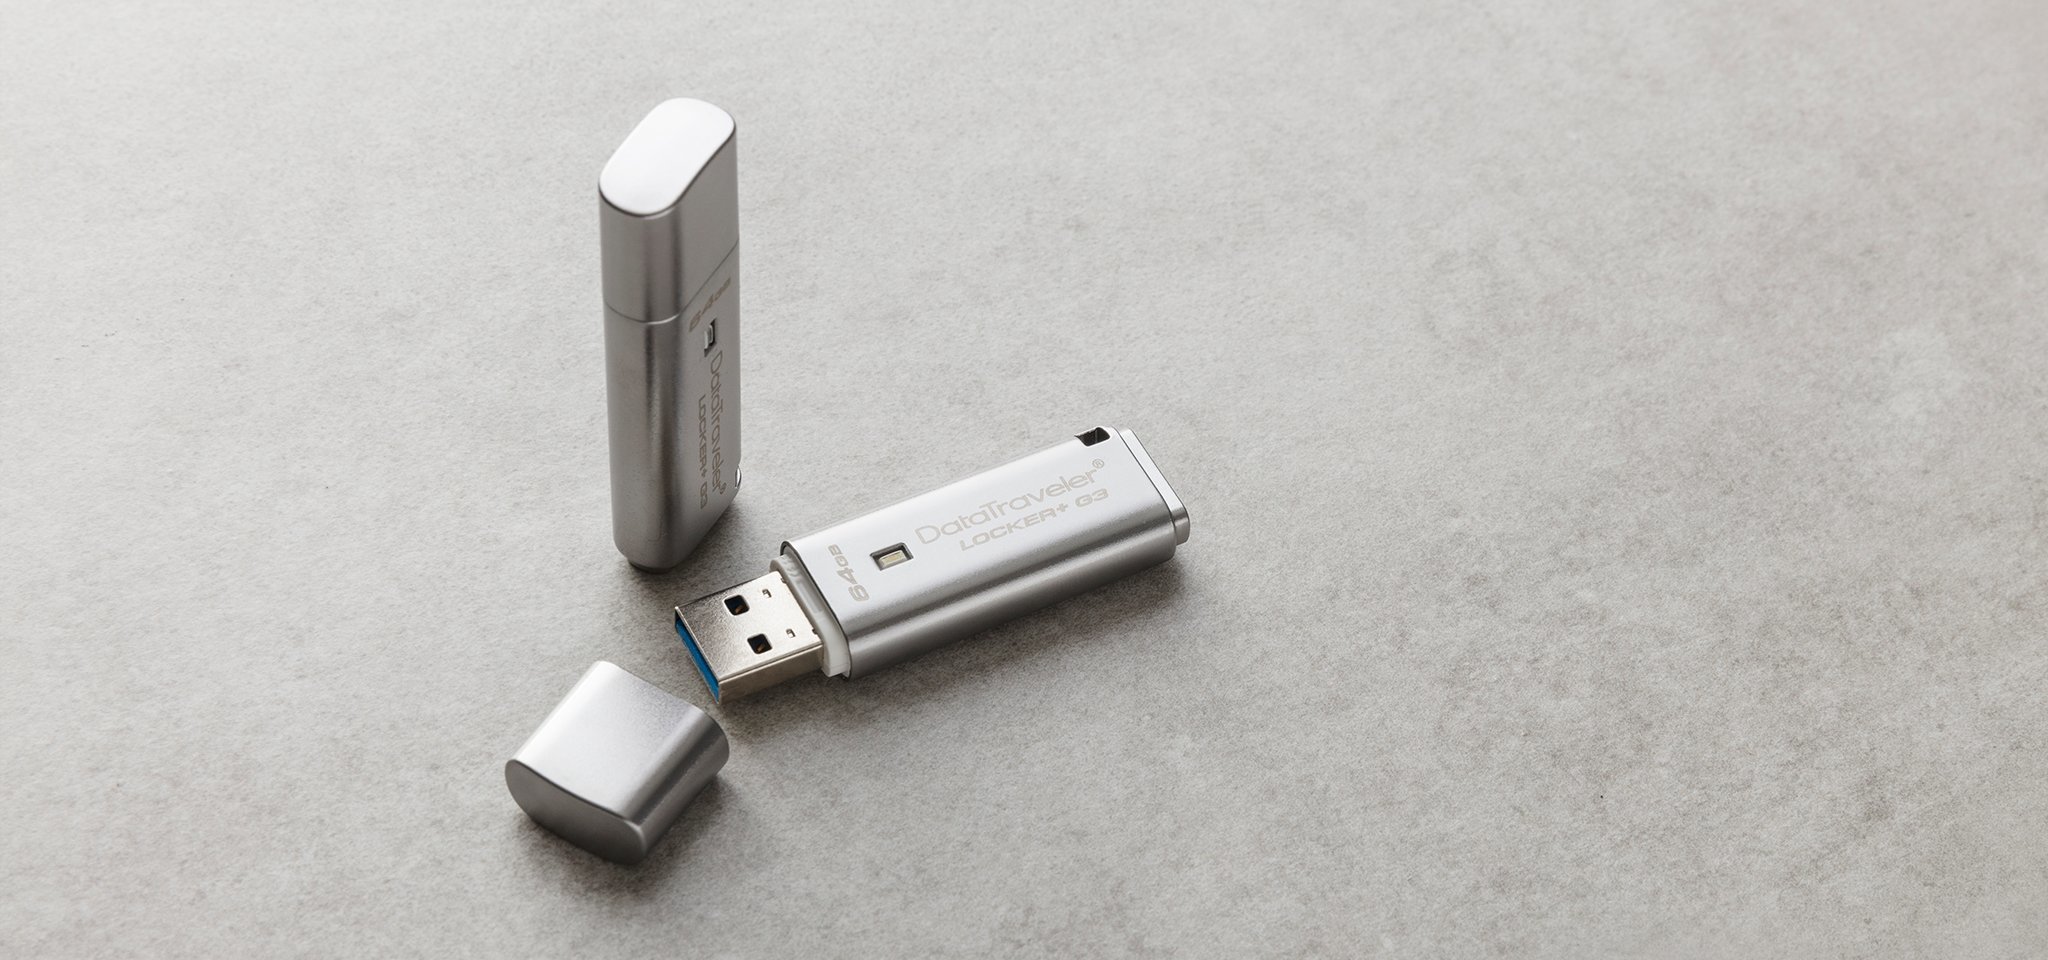 Pamięć Kingston 8GB DataTraveler Locker+ G3 USB 3.0 80MB/s DTLPG3/8GB szary widok od przodu na dwa produkty, jeden pendrive ze zdjętą osłoną portu